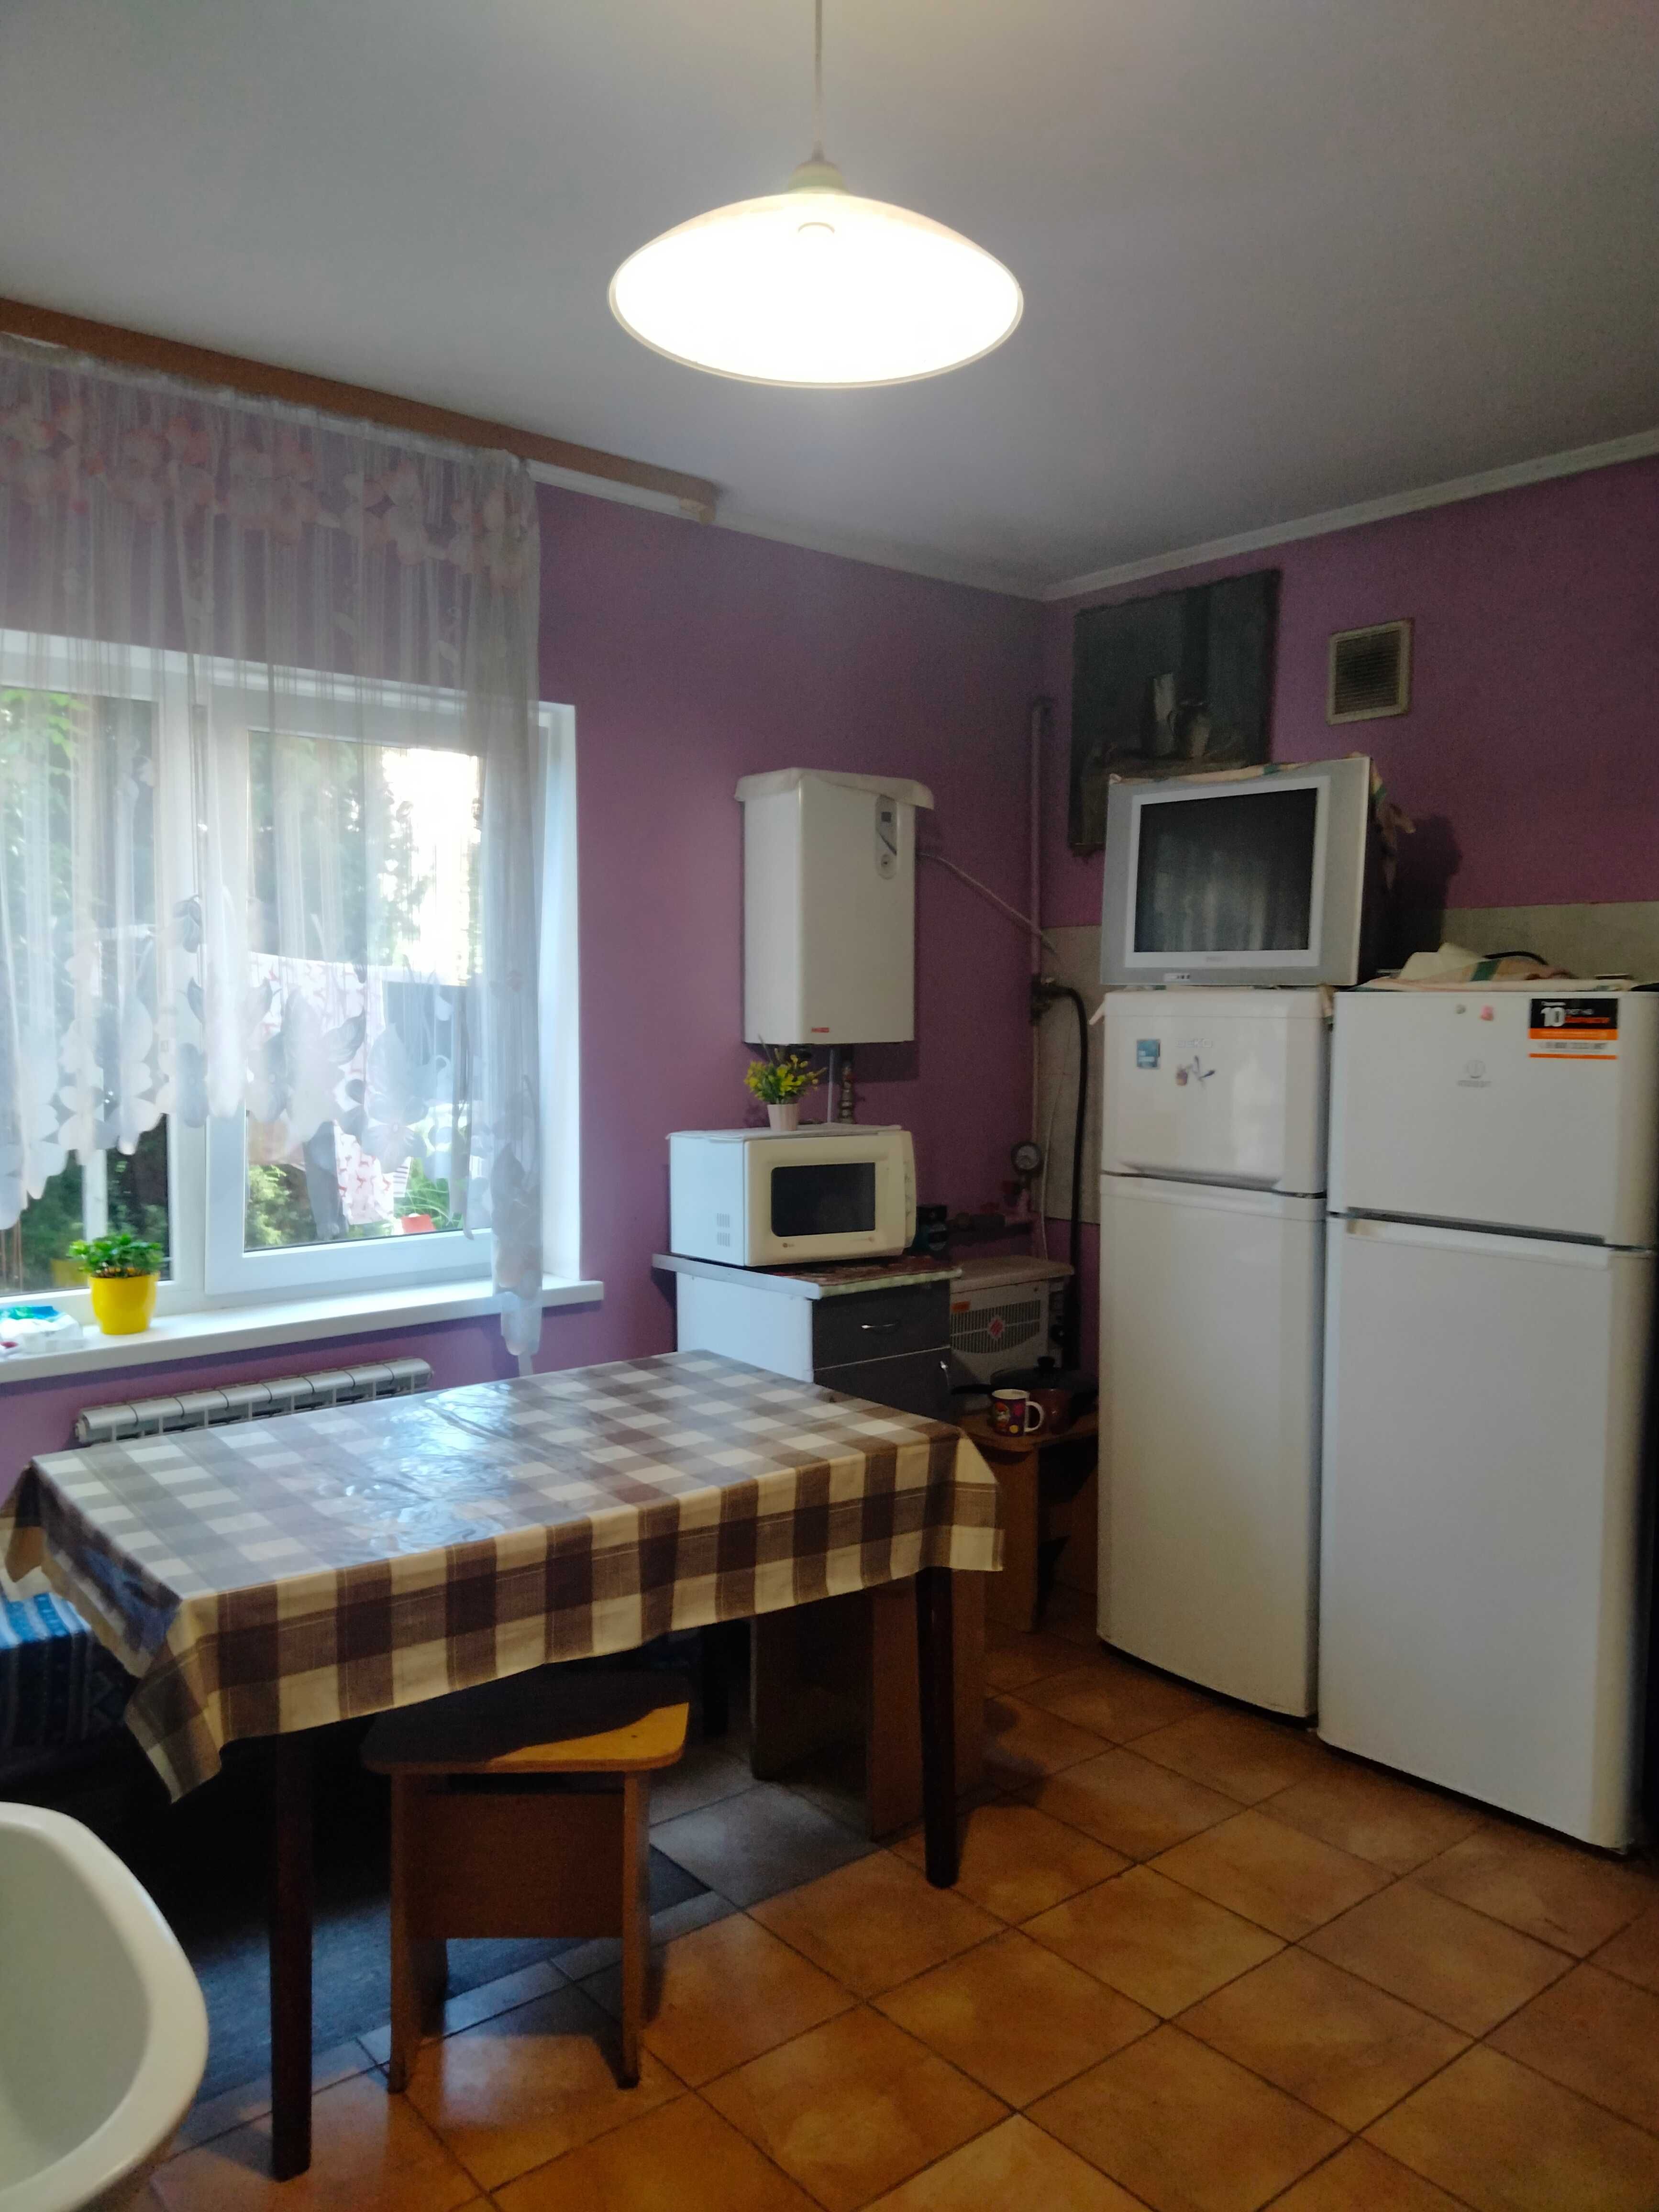 Продается два дома (бизнес и жилье)Соломенский с ремонтом и мебелью